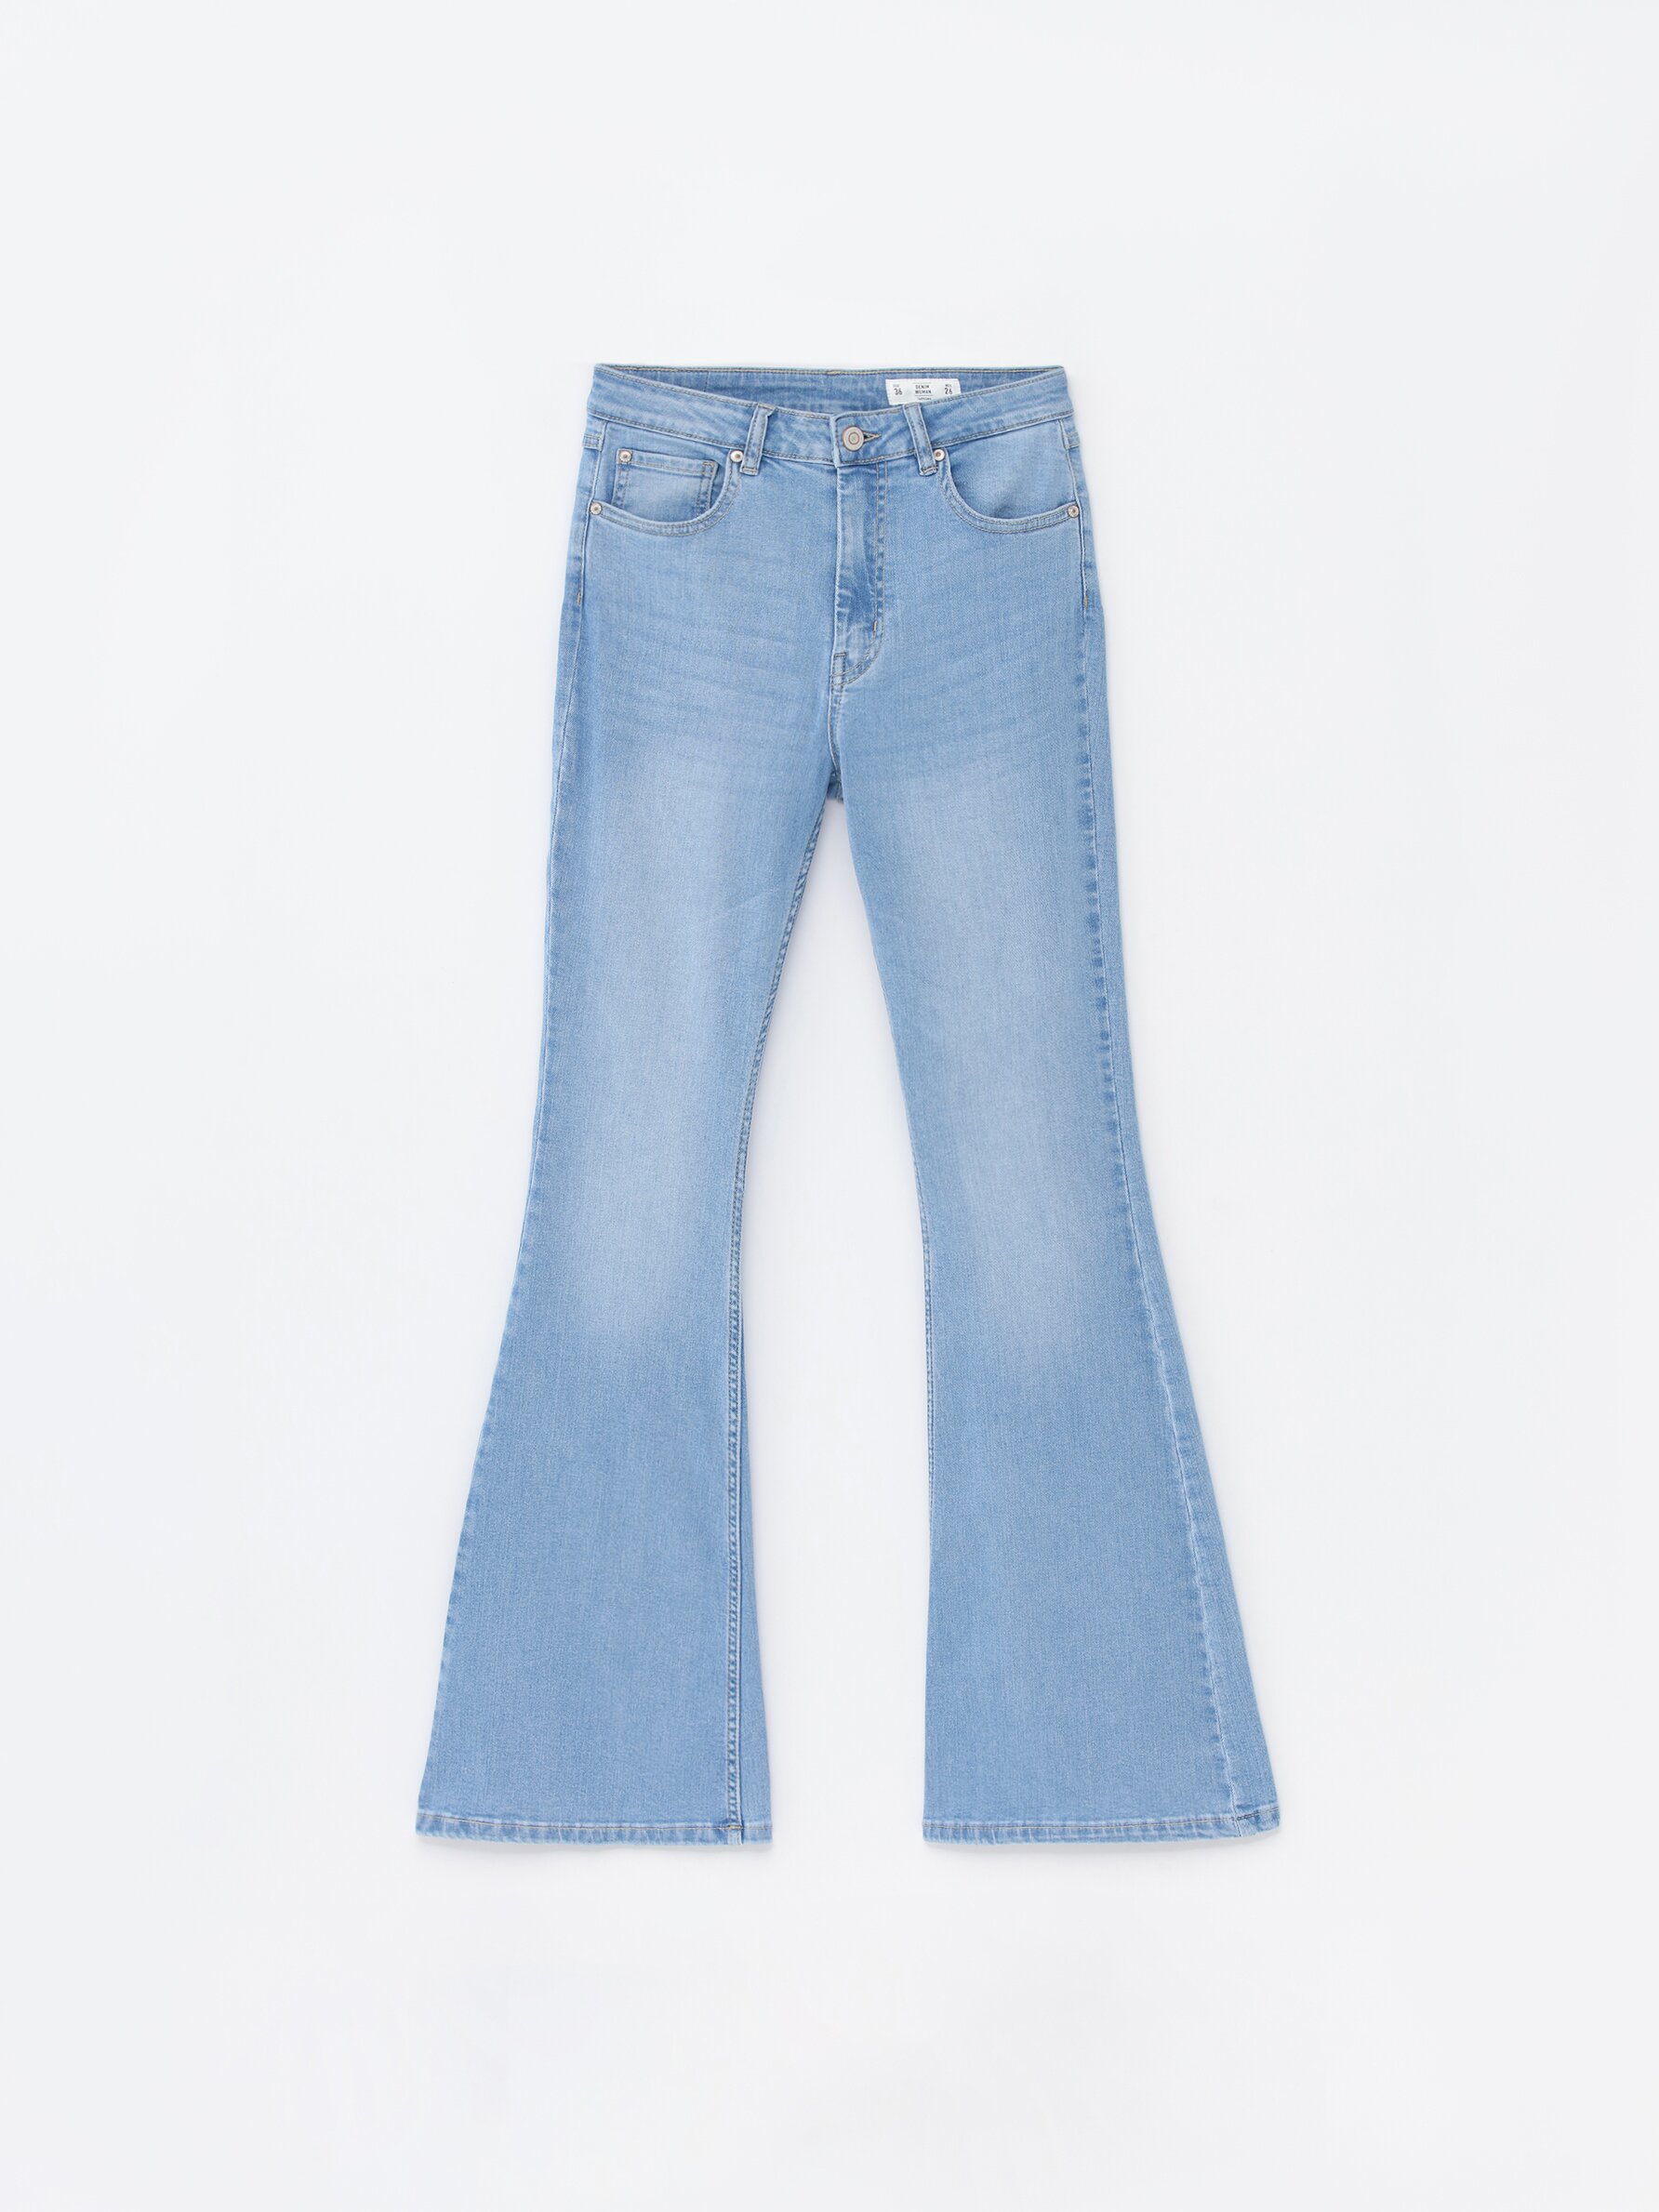 Jeans Acampanados De Tiro Medio Mujer Esprit 023ee1b304